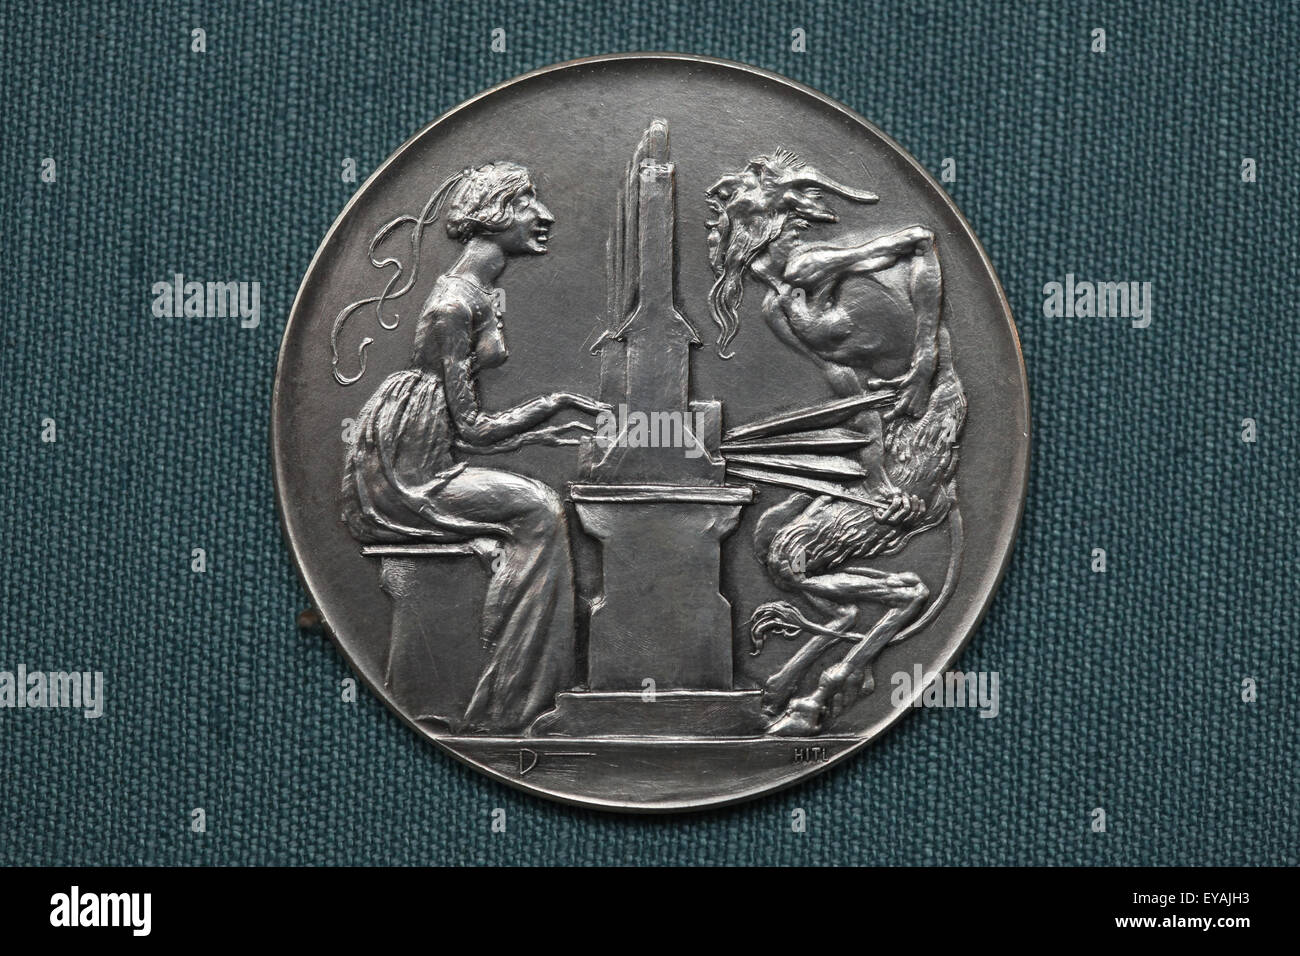 Organista y Diablo. Medalla Jugendstil diseñado por el alemán Maximilian grabador medalla Dasio, 1906. Kunsthistorisches Museum, Viena, Austria. Foto de stock